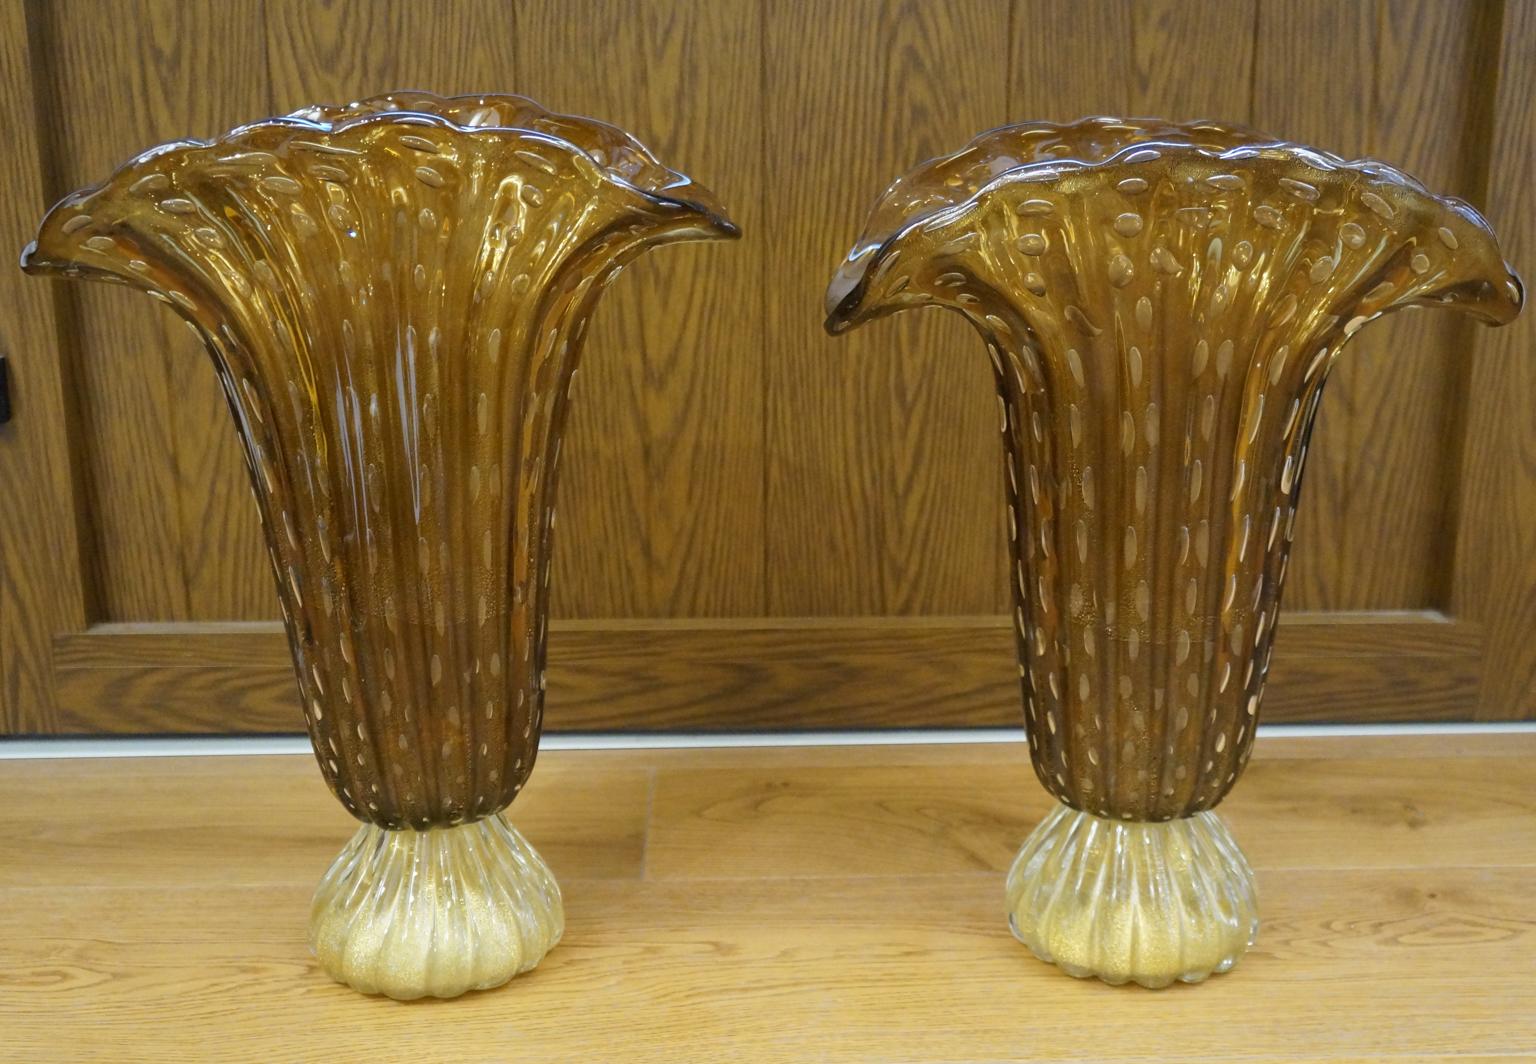 Diese 1987 von Toso Murano entworfenen Vasen sind klassisch, aber sehr elegant. Sie werden Ihrem Zimmer einen Hauch von Klasse verleihen.
Tabakfarben mit 24-karätigem Blattgolddekor und internen Luftblasen. 
Projekt von Toso Murano aus den Jahren